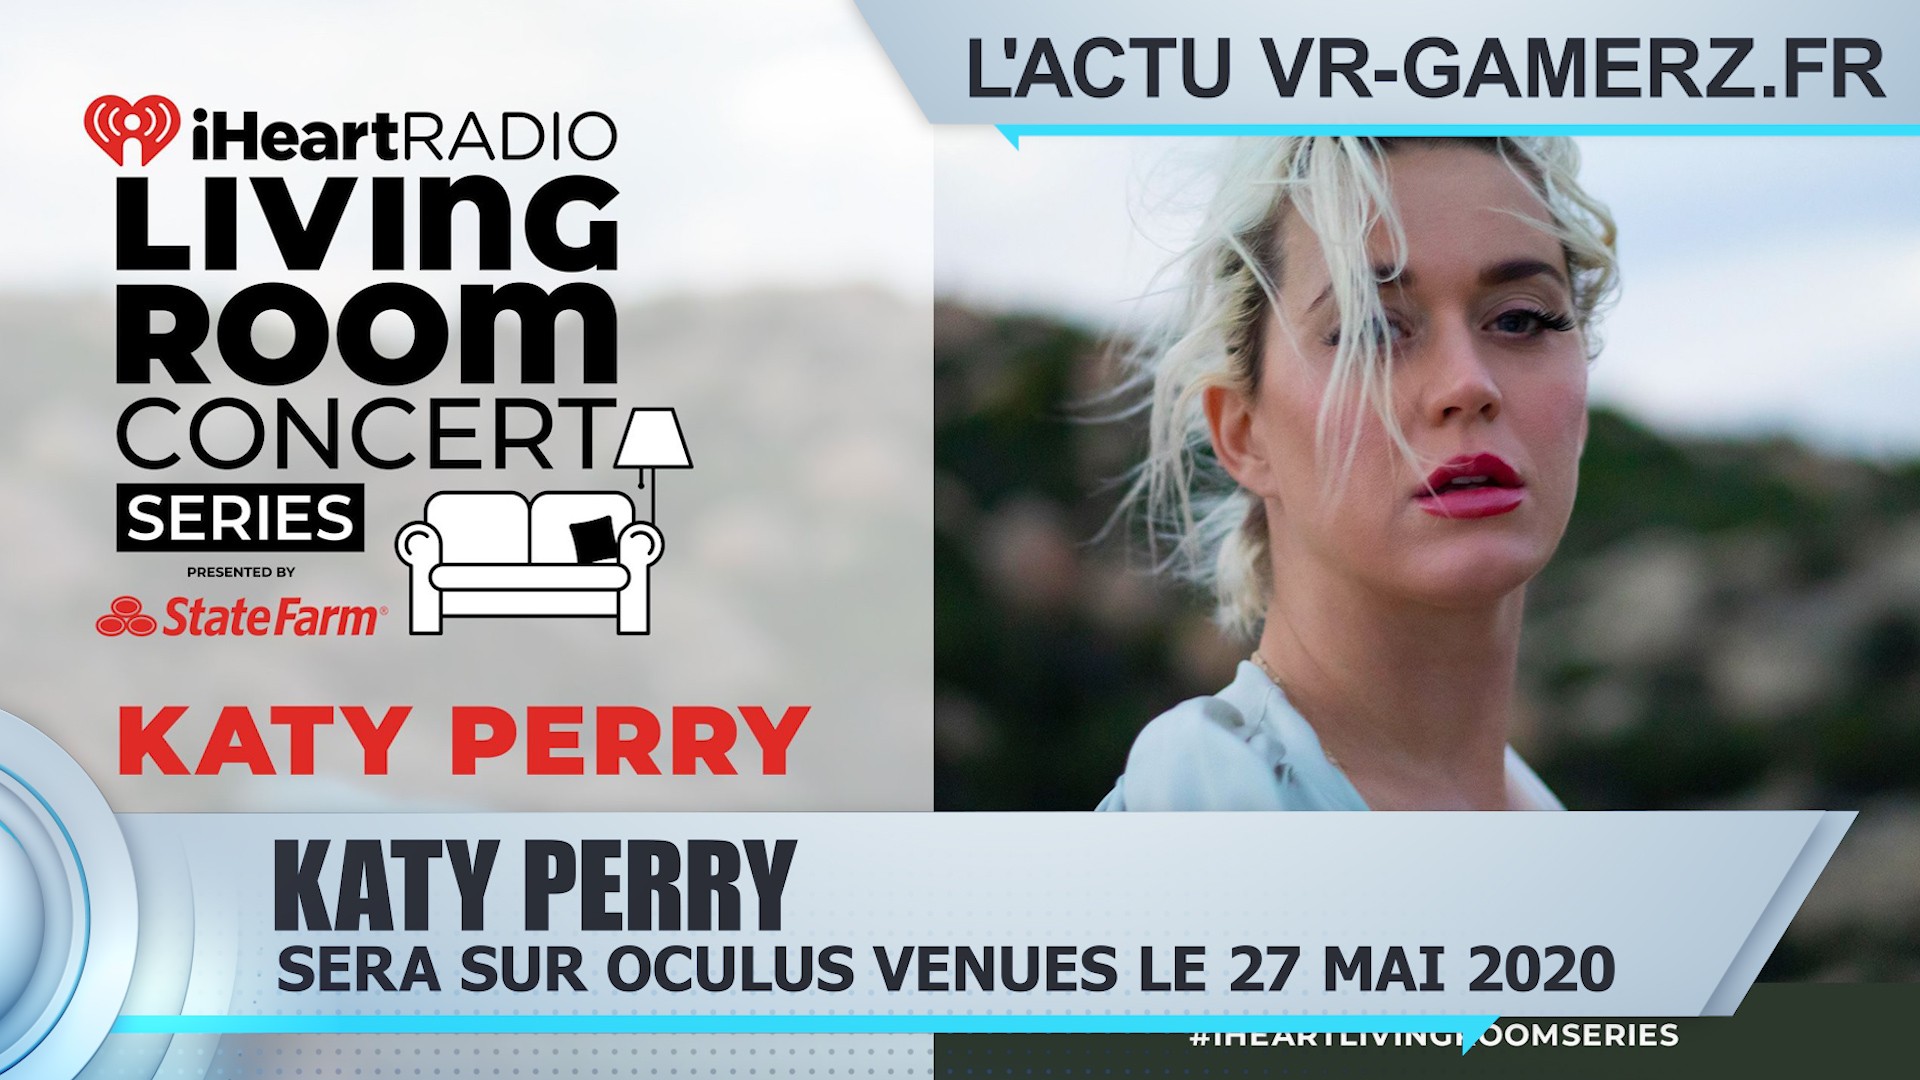 Katy Perry sera sur Oculus venues le 27 Mai